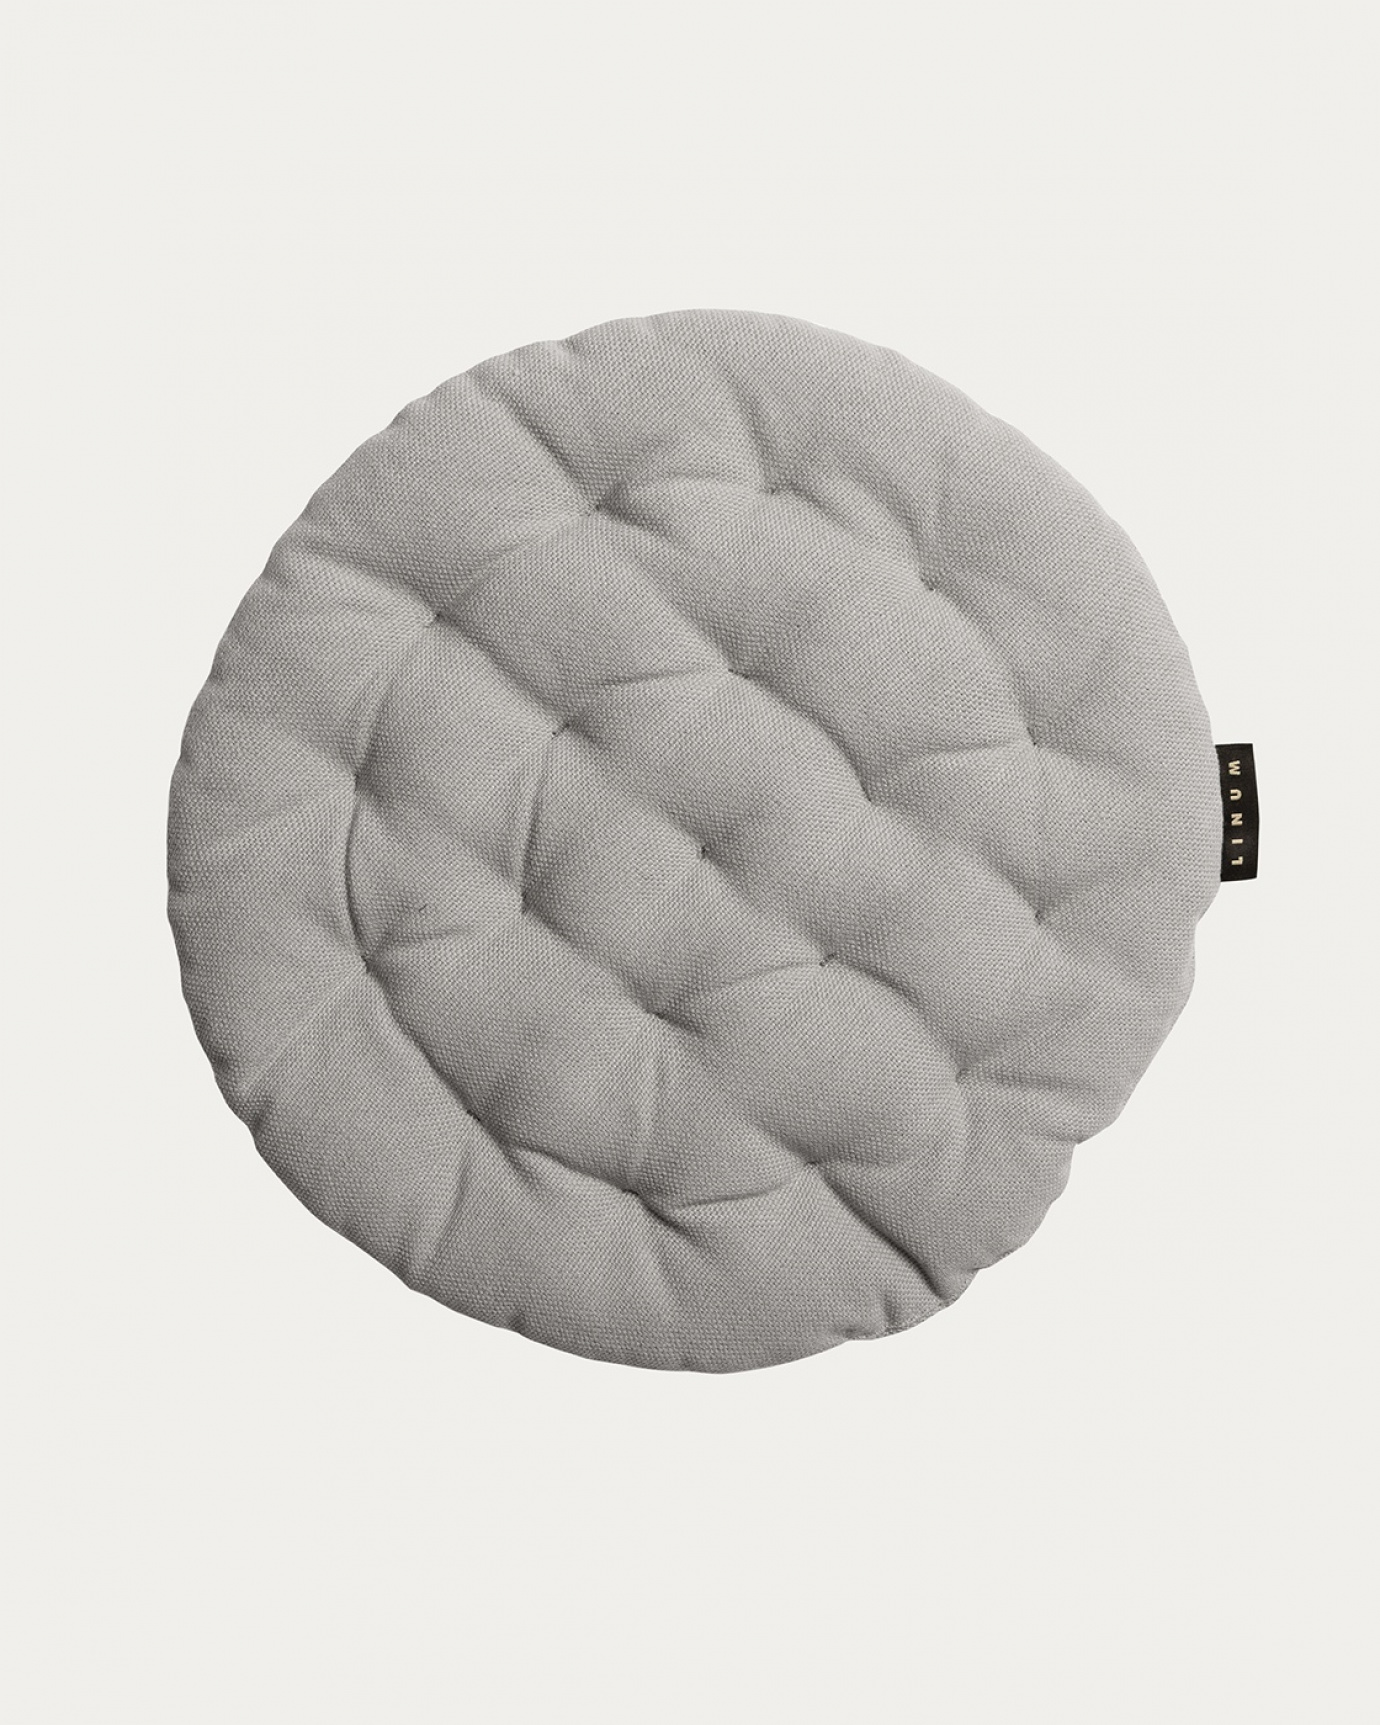 Produktbild ljusgrå PEPPER sittdyna av mjuk bomull med återvunnen polyesterfyllning från LINUM DESIGN. Storlek ø37 cm.